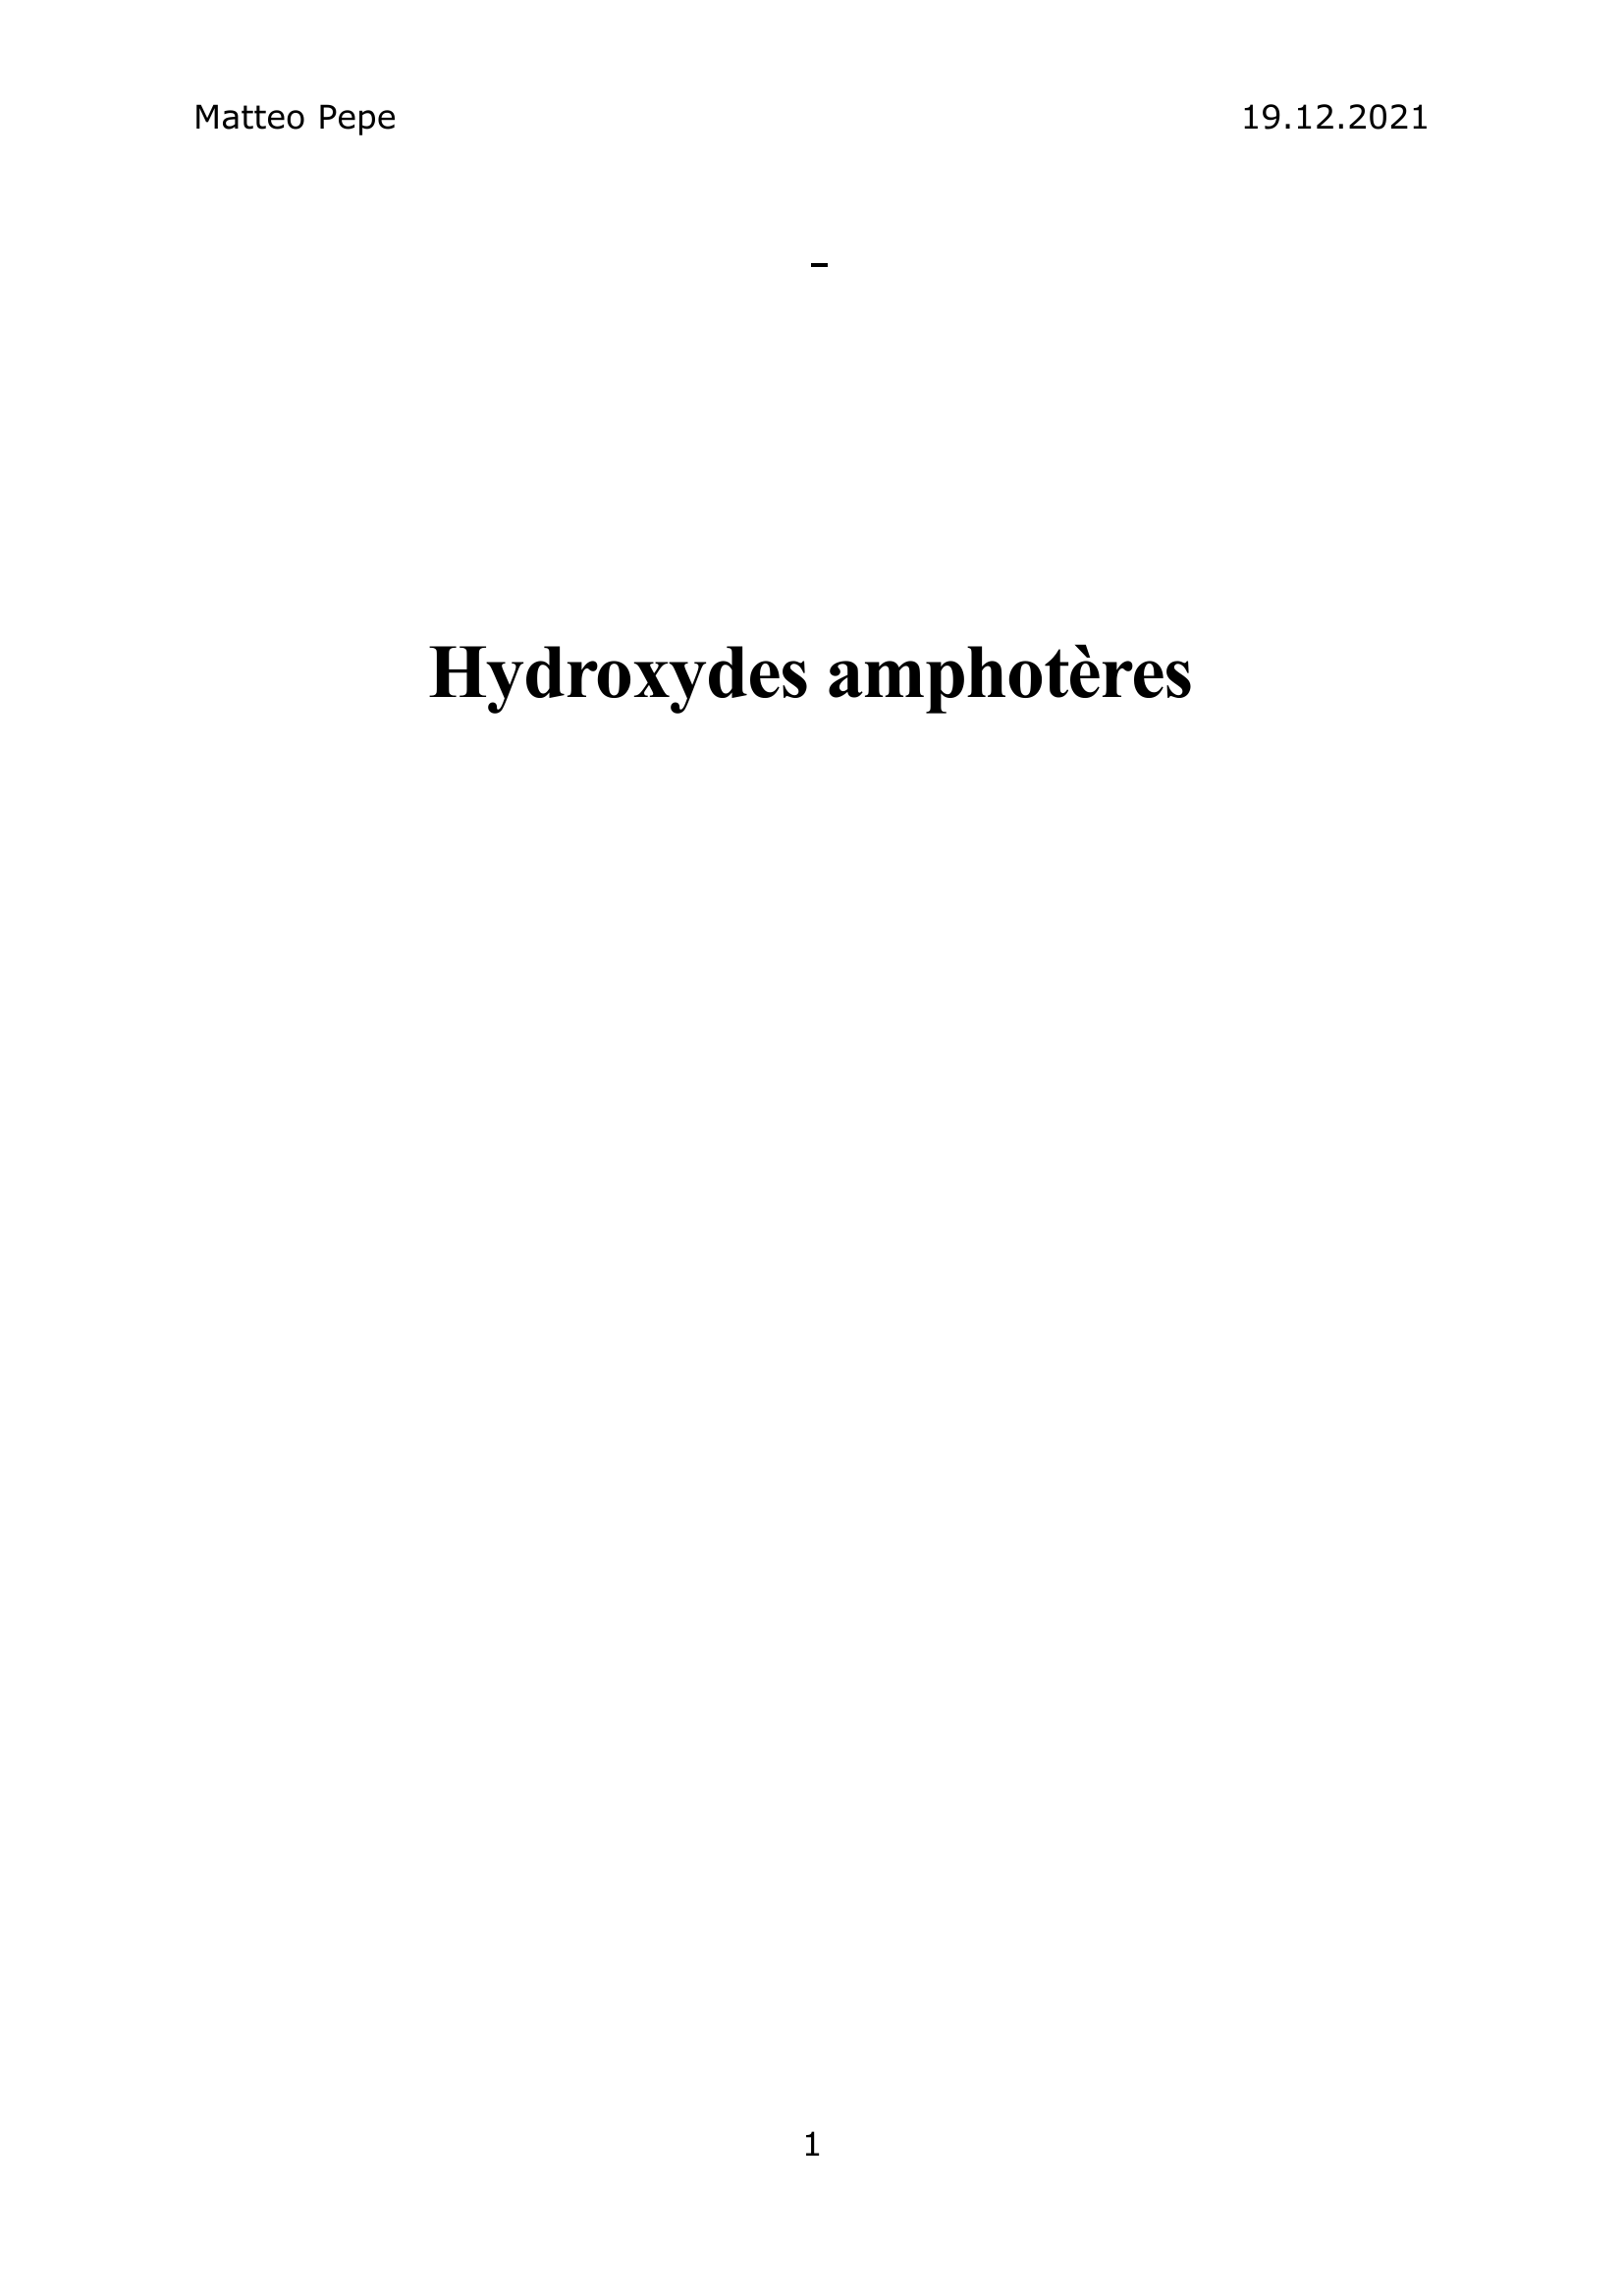 Prévisualisation du document Hydroxydes amphotères